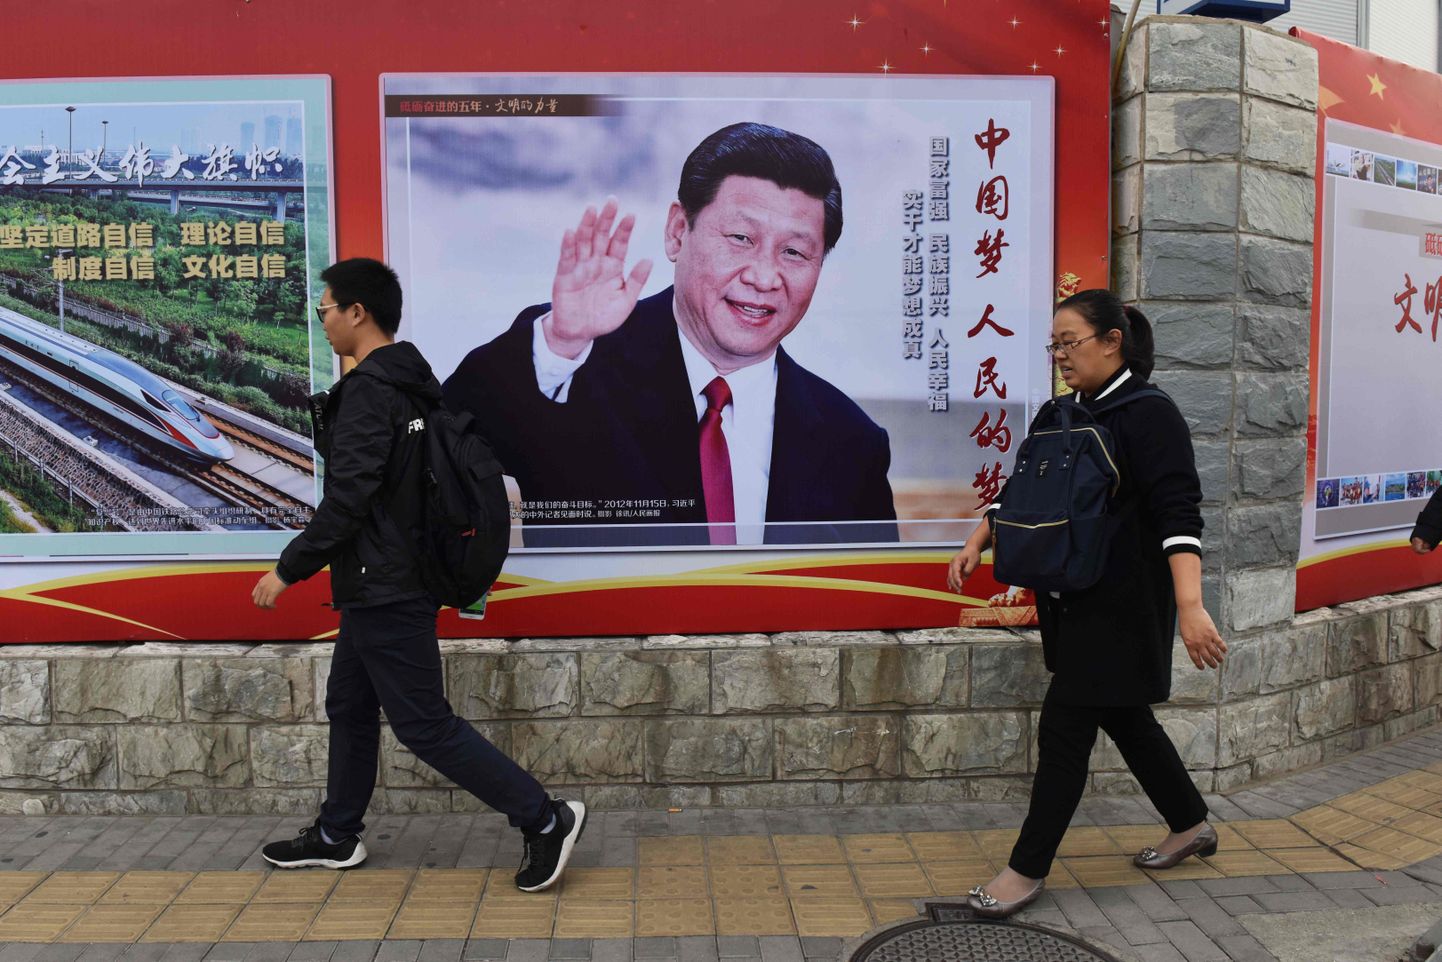 Inimesed möödumas Pekingis Hiina presidenti Xi Jinpingi kujutavast postrist, millel on kirjutatud hüüdlause «Hiina unistus, inimeste unistus».